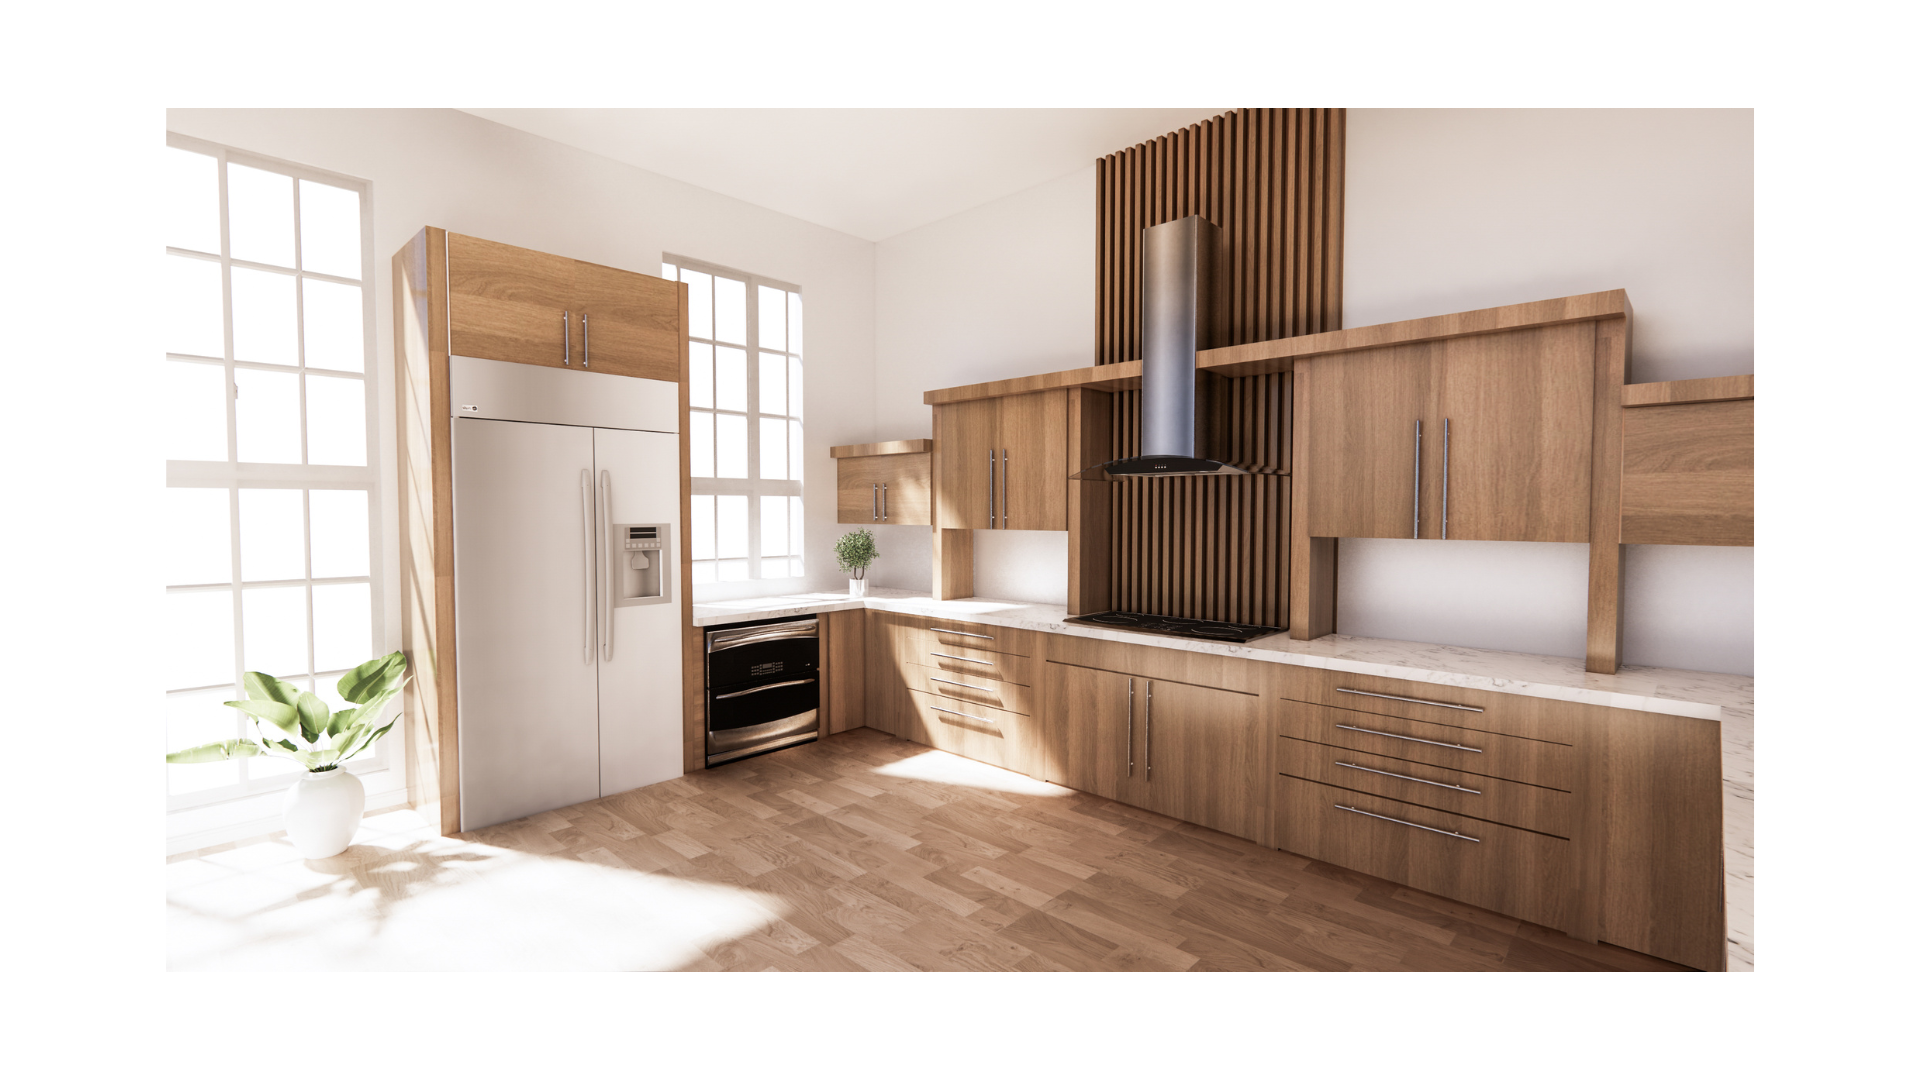 intergrated fridge in modern kitchen design